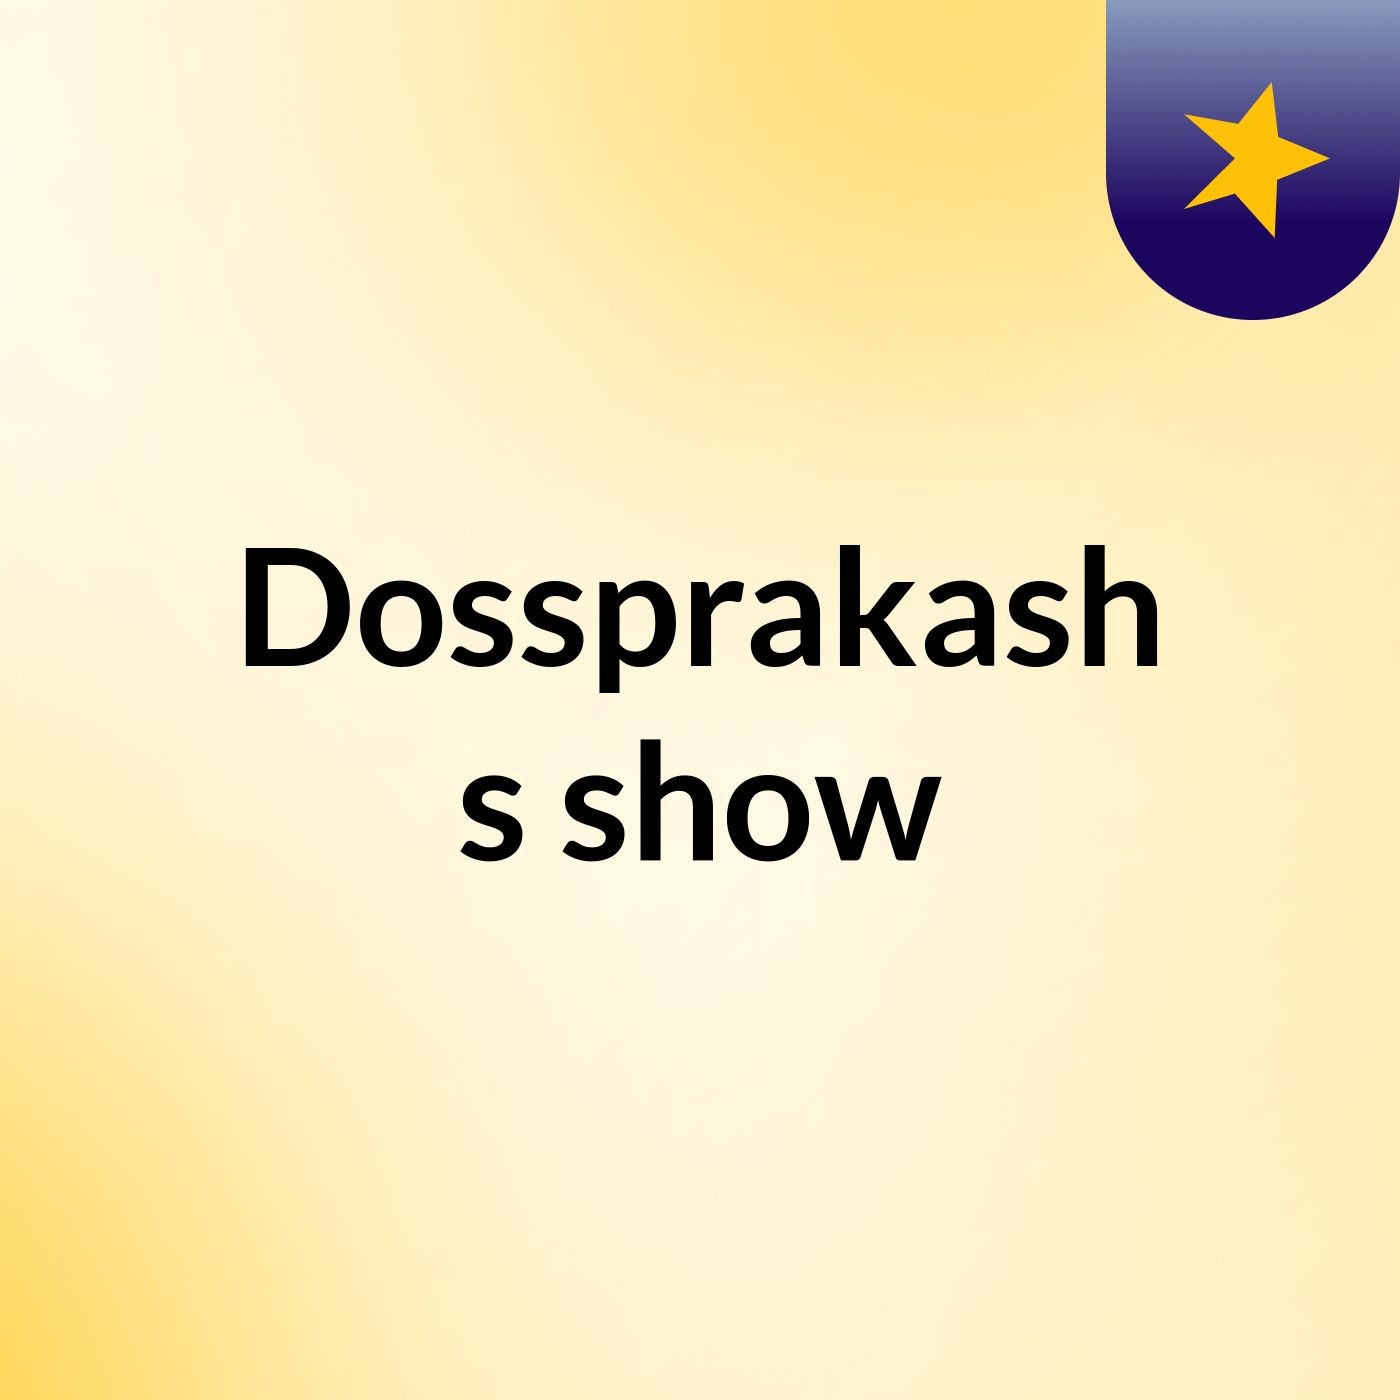 Dossprakash's show